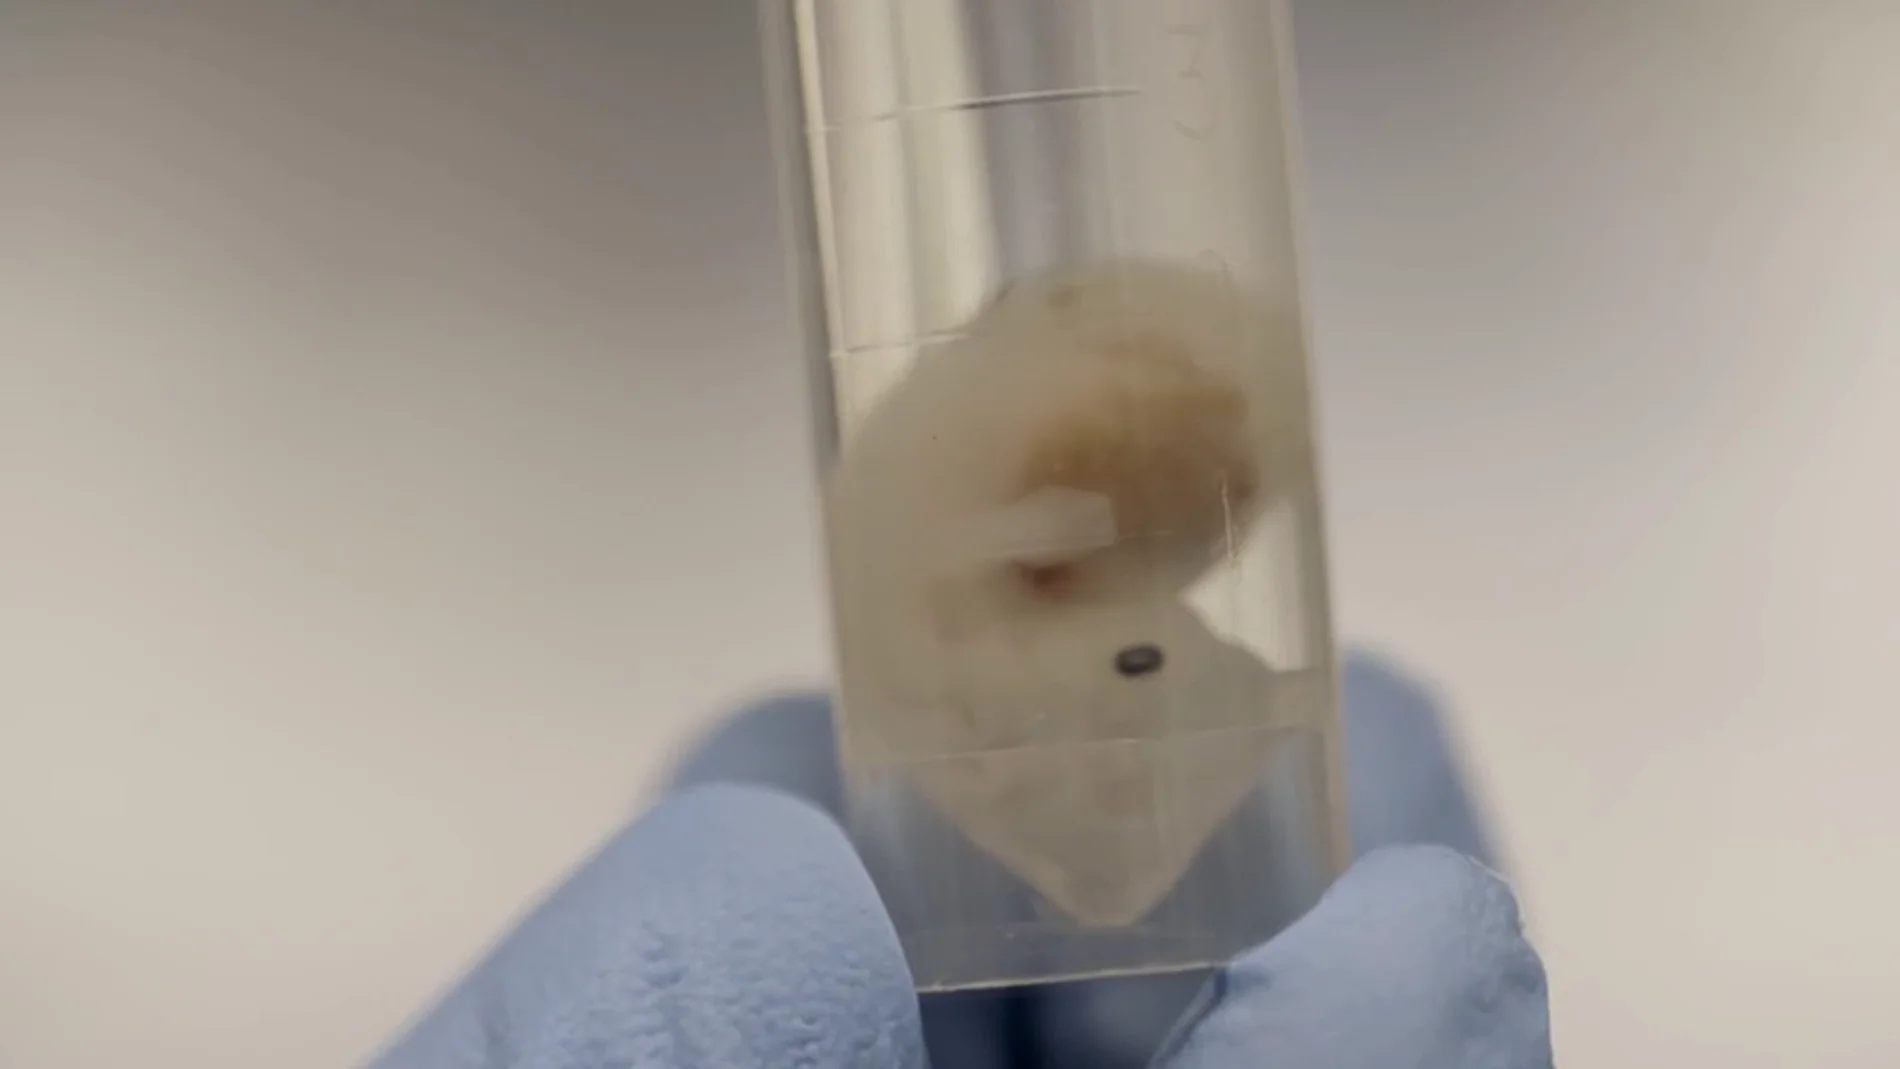 El futuro de los trasplantes, cultivar órganos humanos en embriones de animales: "El sueño es tener corazones o pulmones para trasplantar en el momento que queramos"